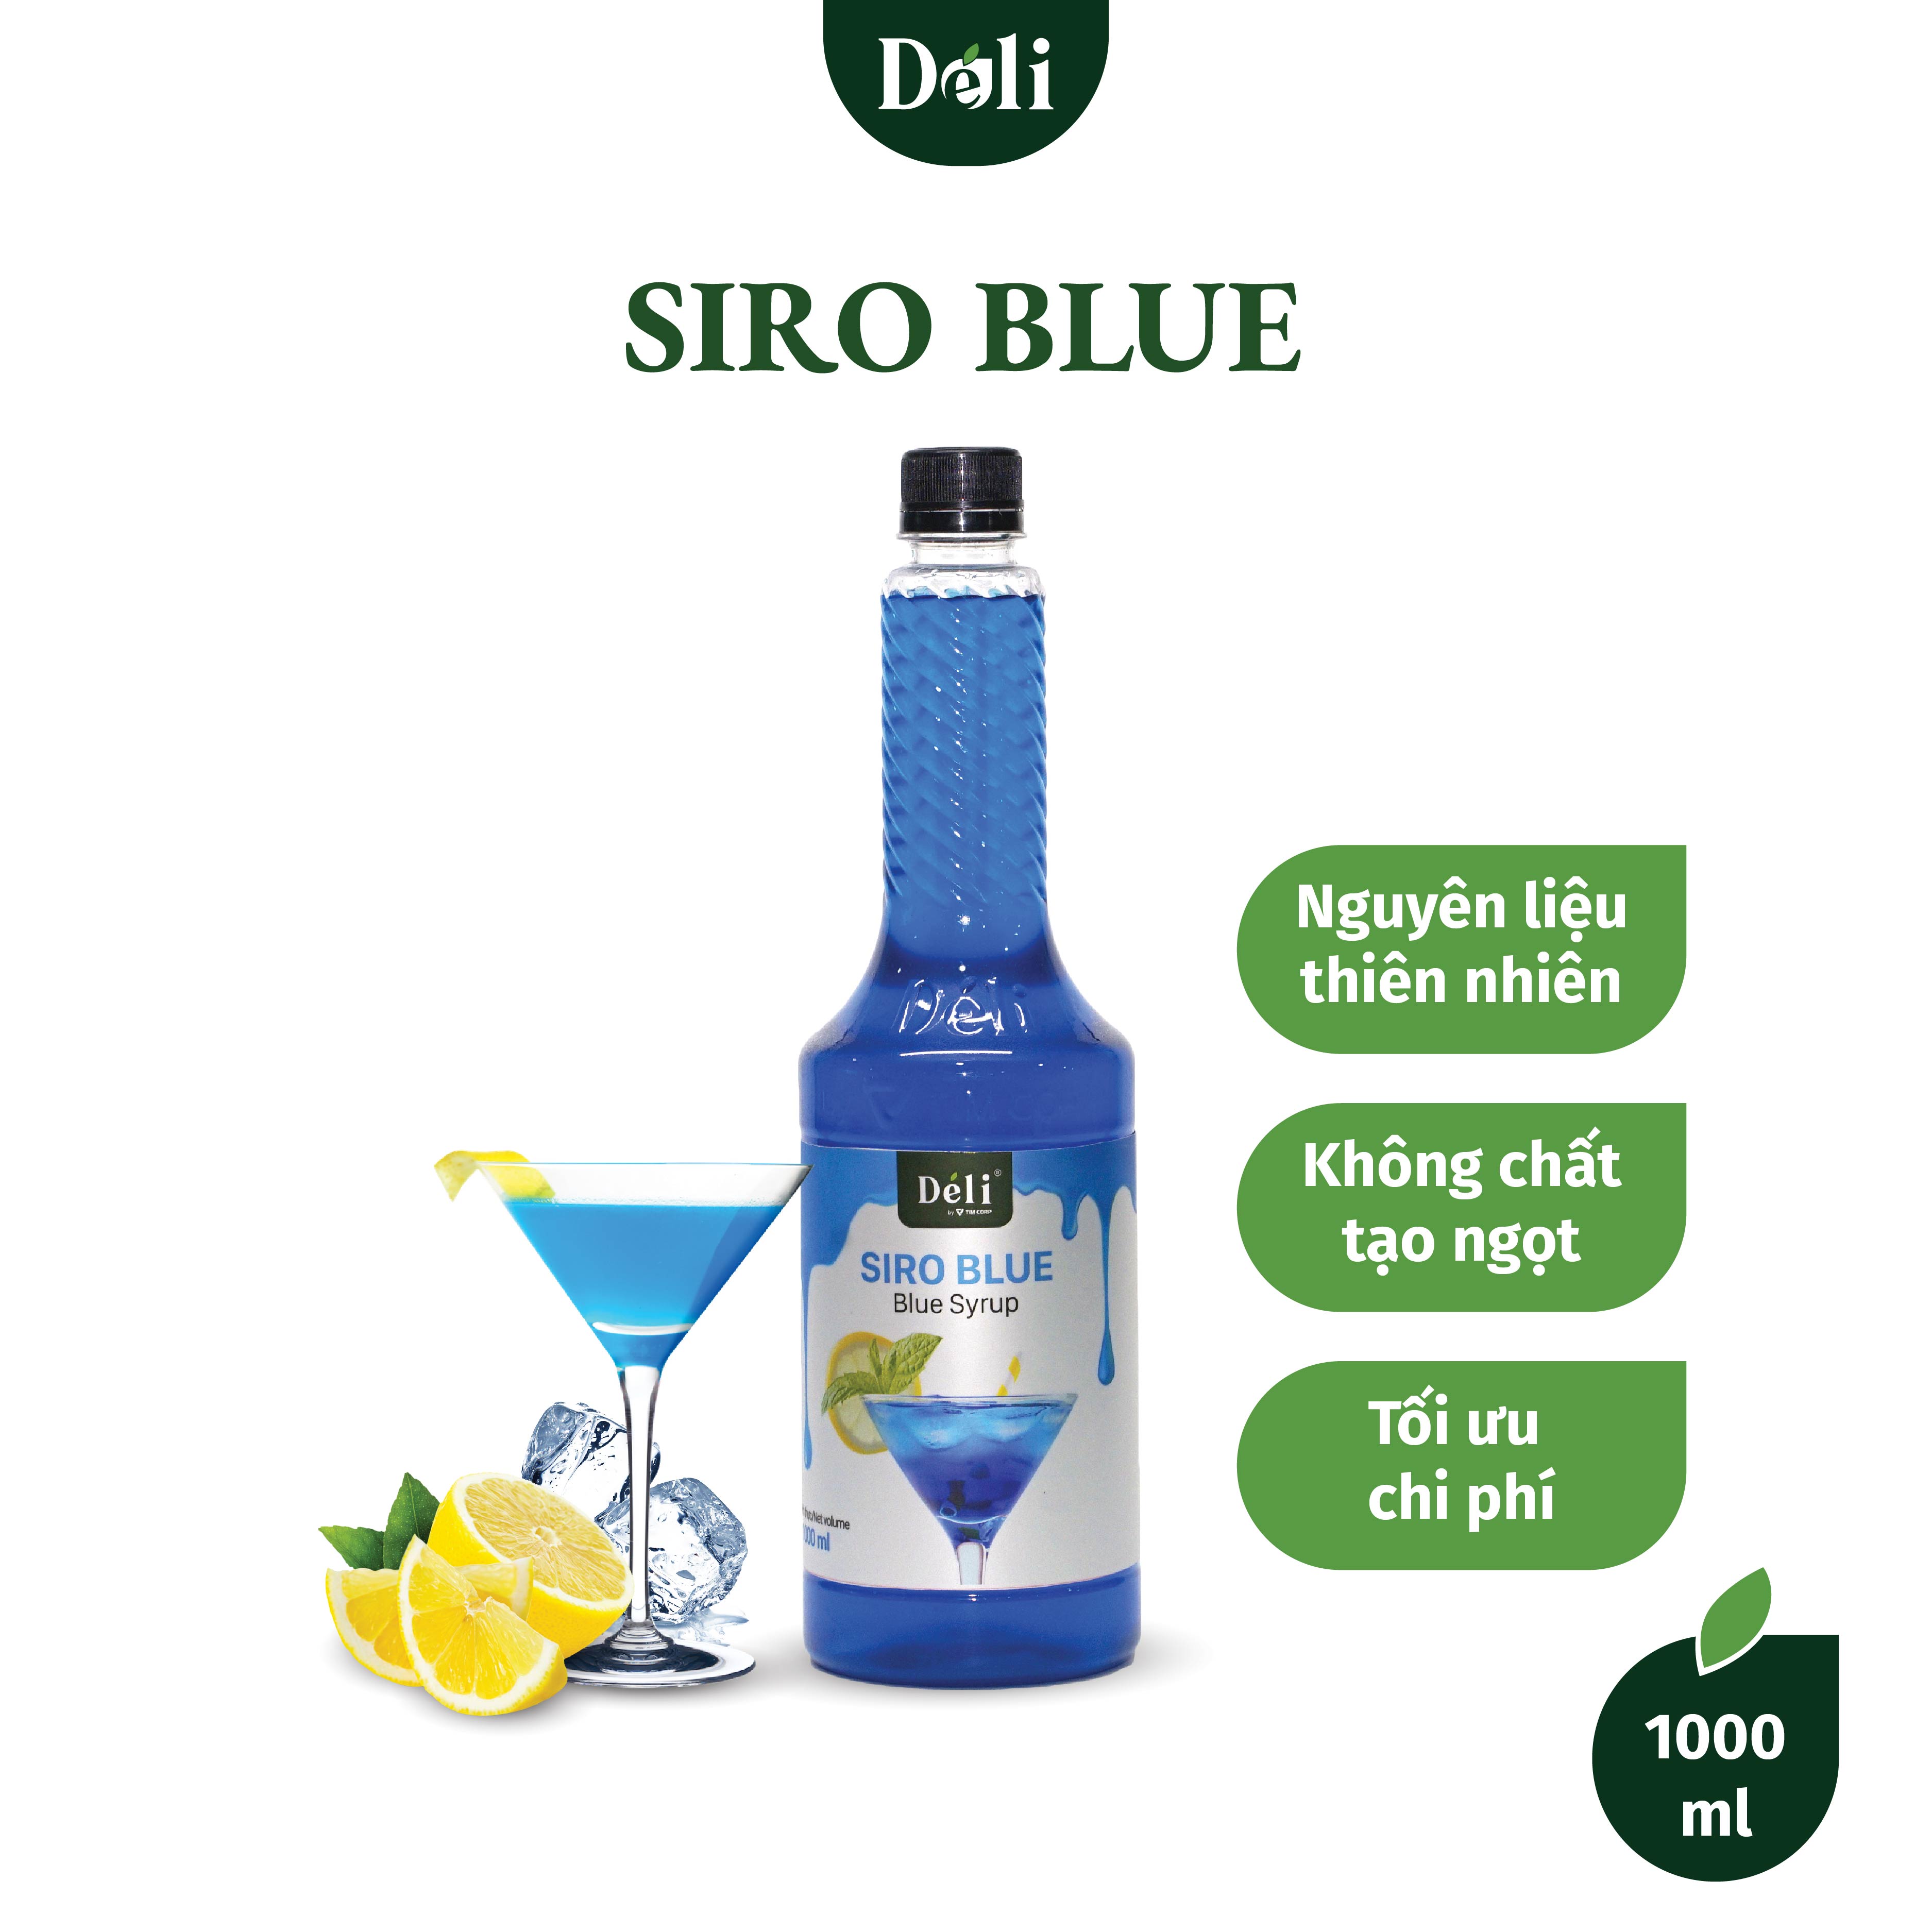 Siro blue Déli chai 1lit, HSD: 12 tháng  [CHUYÊN SỈ] Nguyên liệu pha chế trà trái cây, soda,...